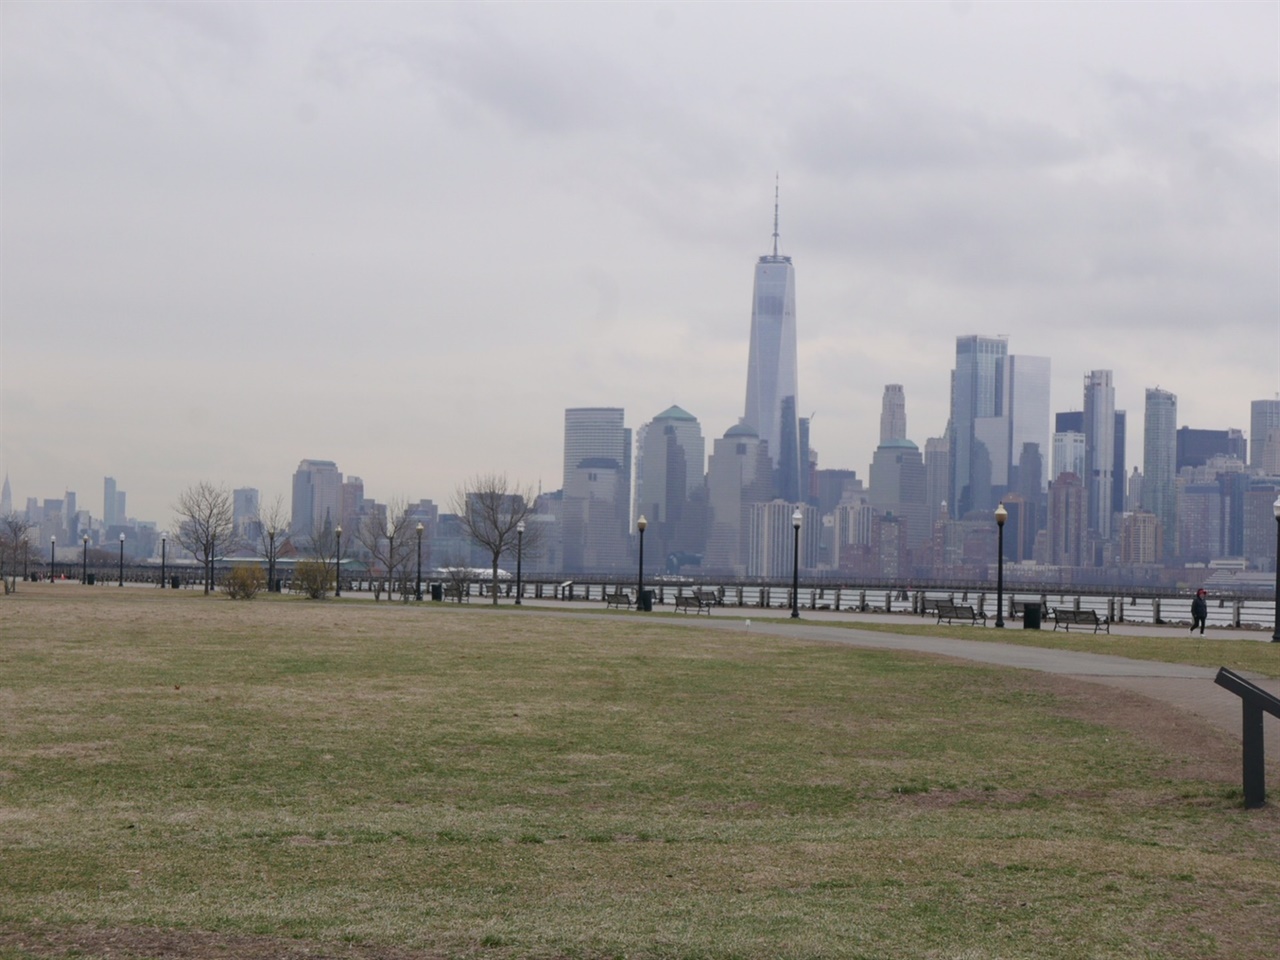 뉴욕, 뉴저지 셧다운 전에 차를 타고 1시간 거리의 한적한 공원에 다녀왔다.